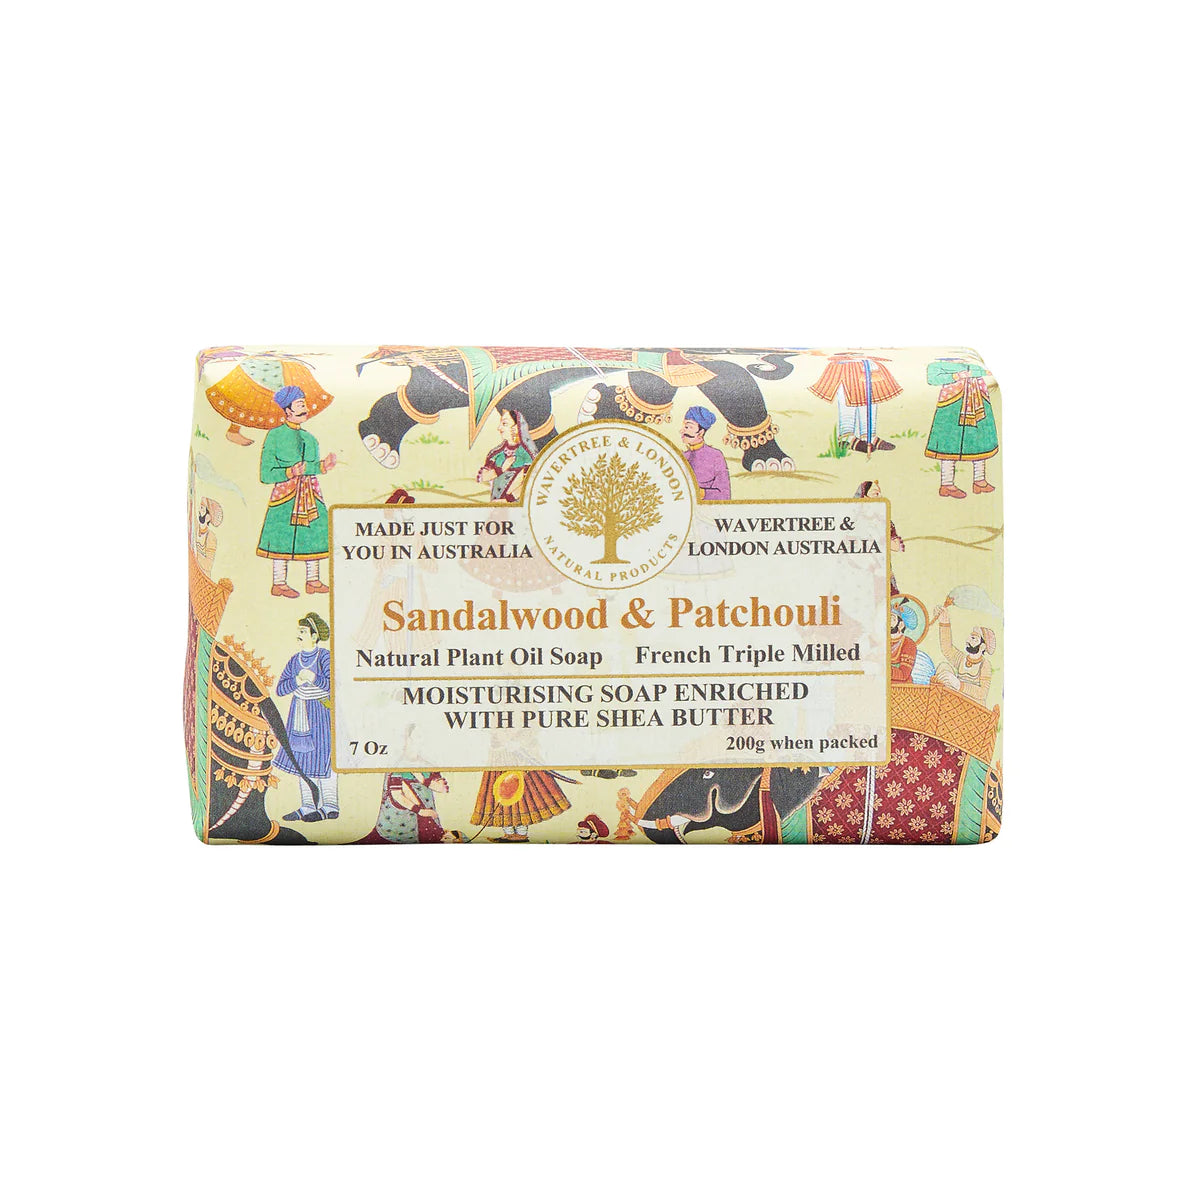 Sandalwood & Patchouli Soap Bar